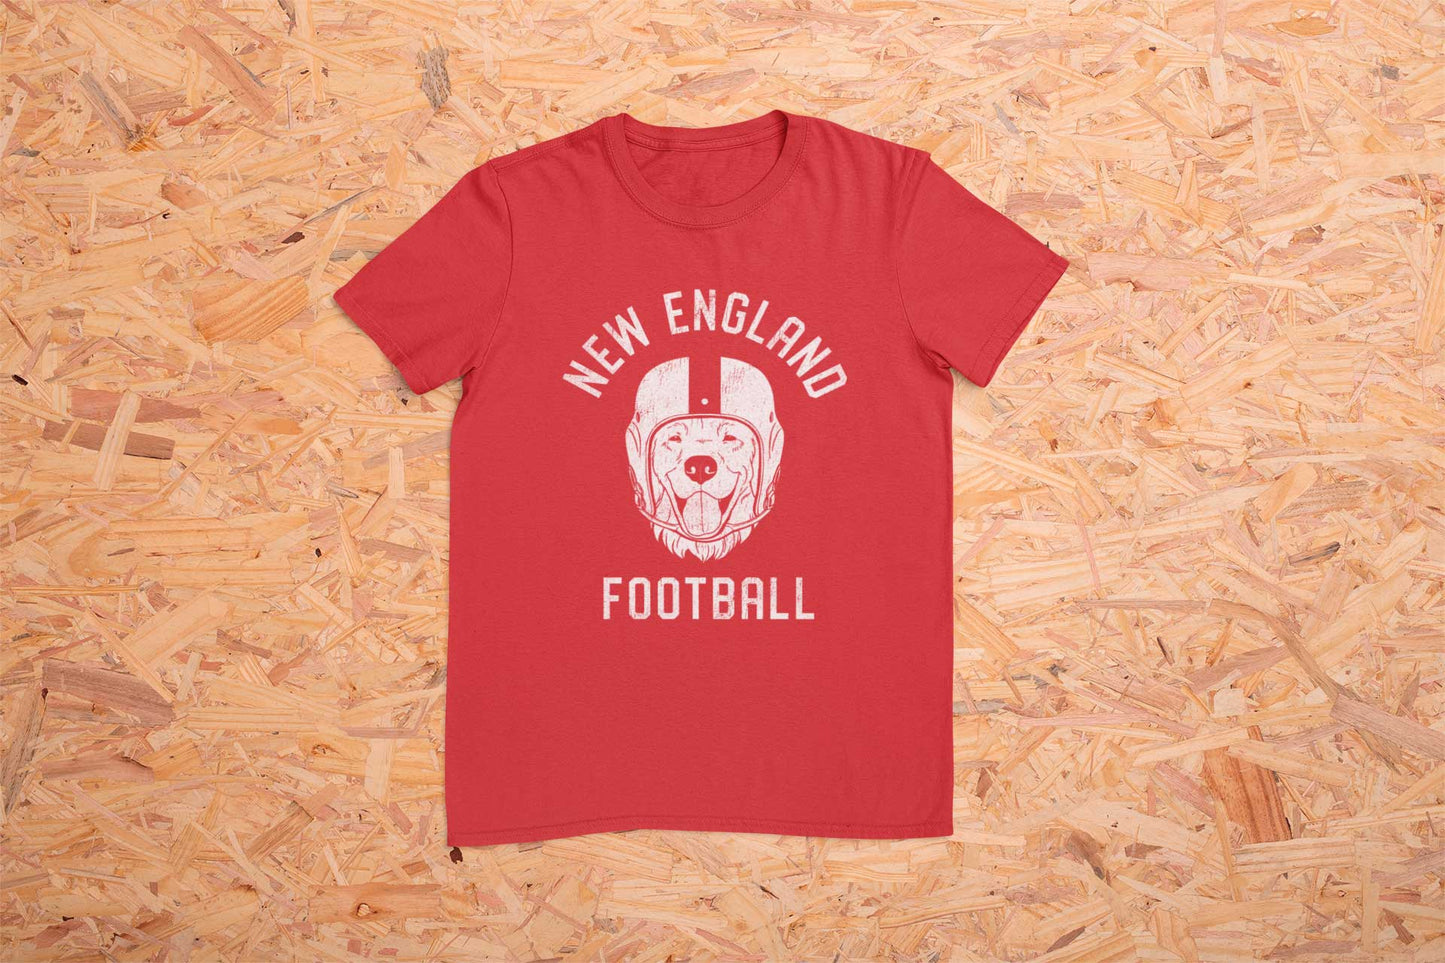 New England Football Golden Retriever T-Shirt